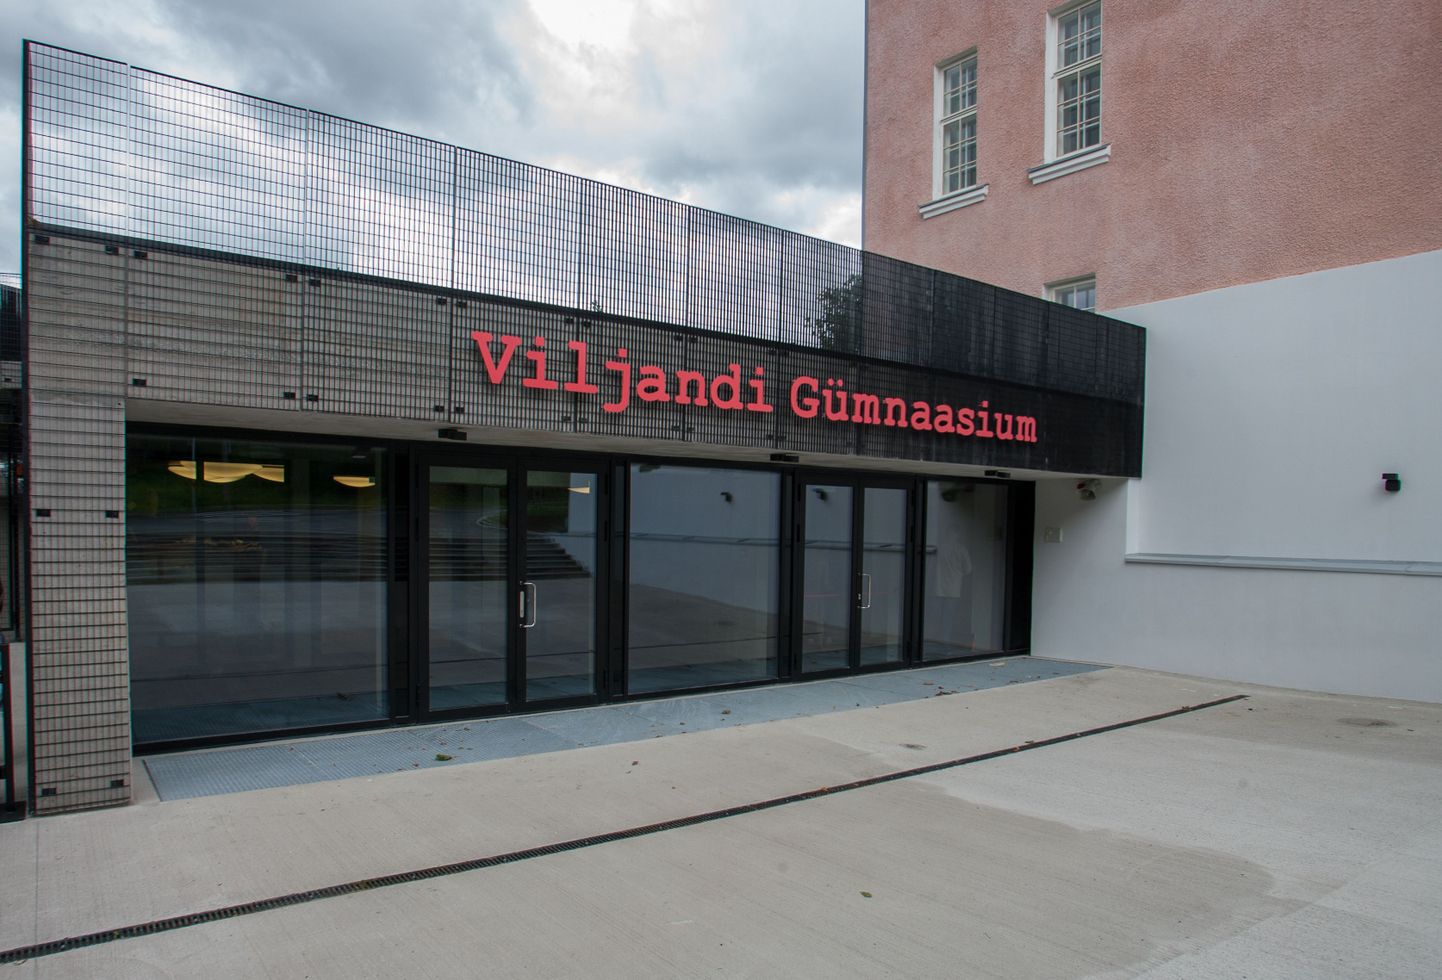 Aivo Pedak sai tiitli Viljandi Gümnaasiumi ehitamise eest.